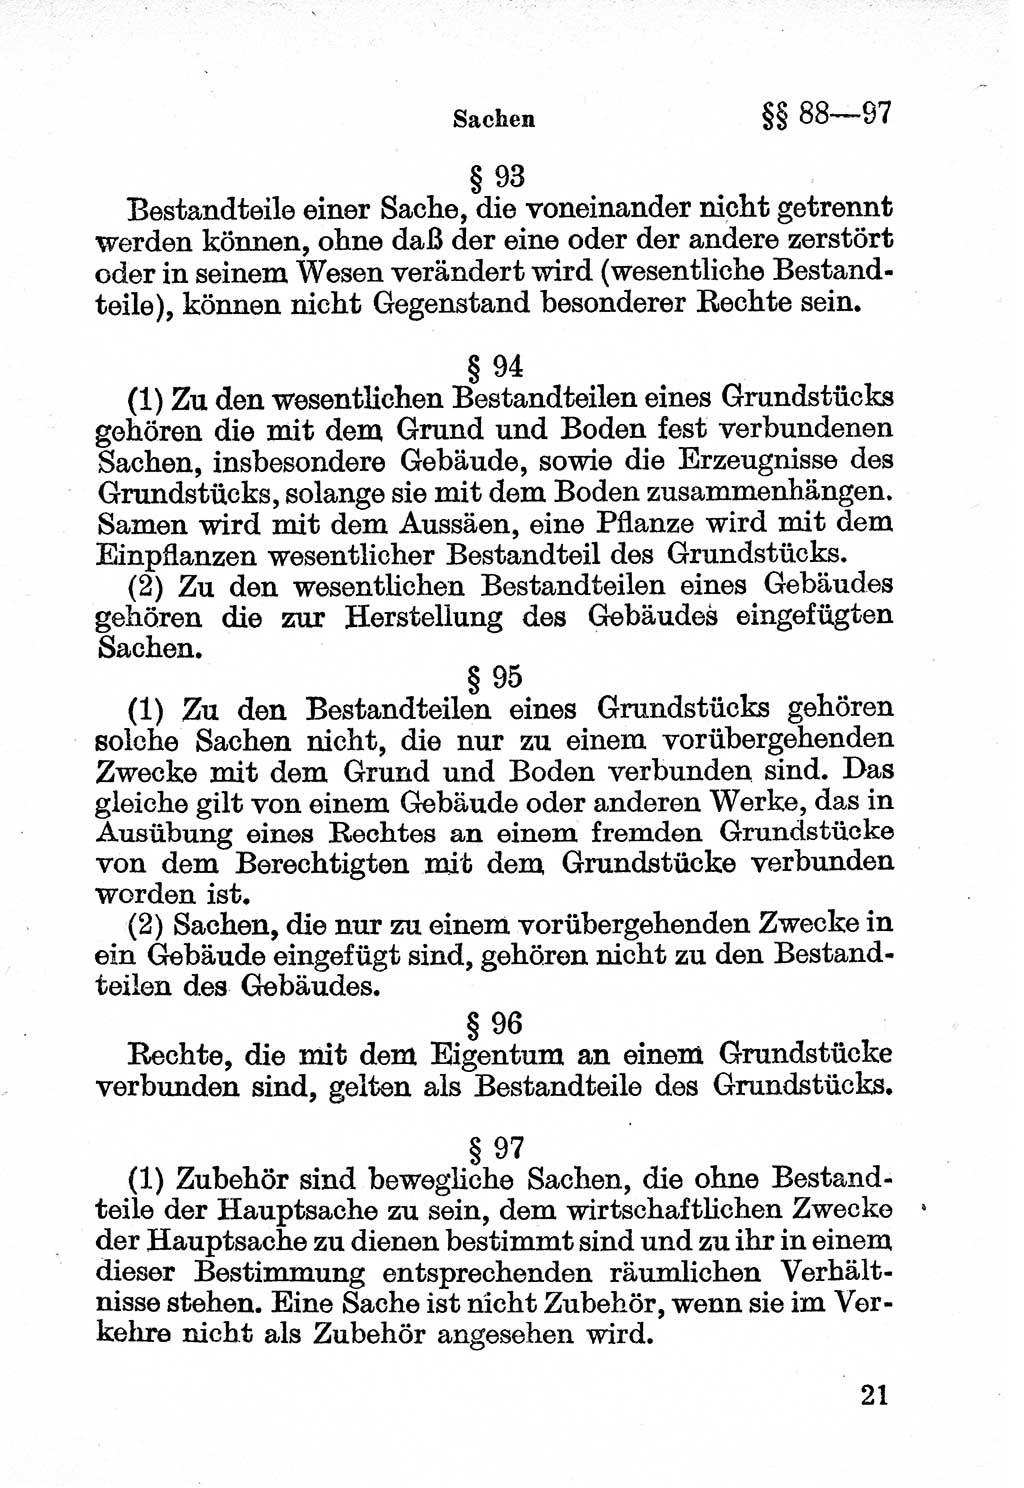 Bürgerliches Gesetzbuch (BGB) nebst wichtigen Nebengesetzen [Deutsche Demokratische Republik (DDR)] 1956, Seite 21 (BGB Nebenges. DDR 1956, S. 21)